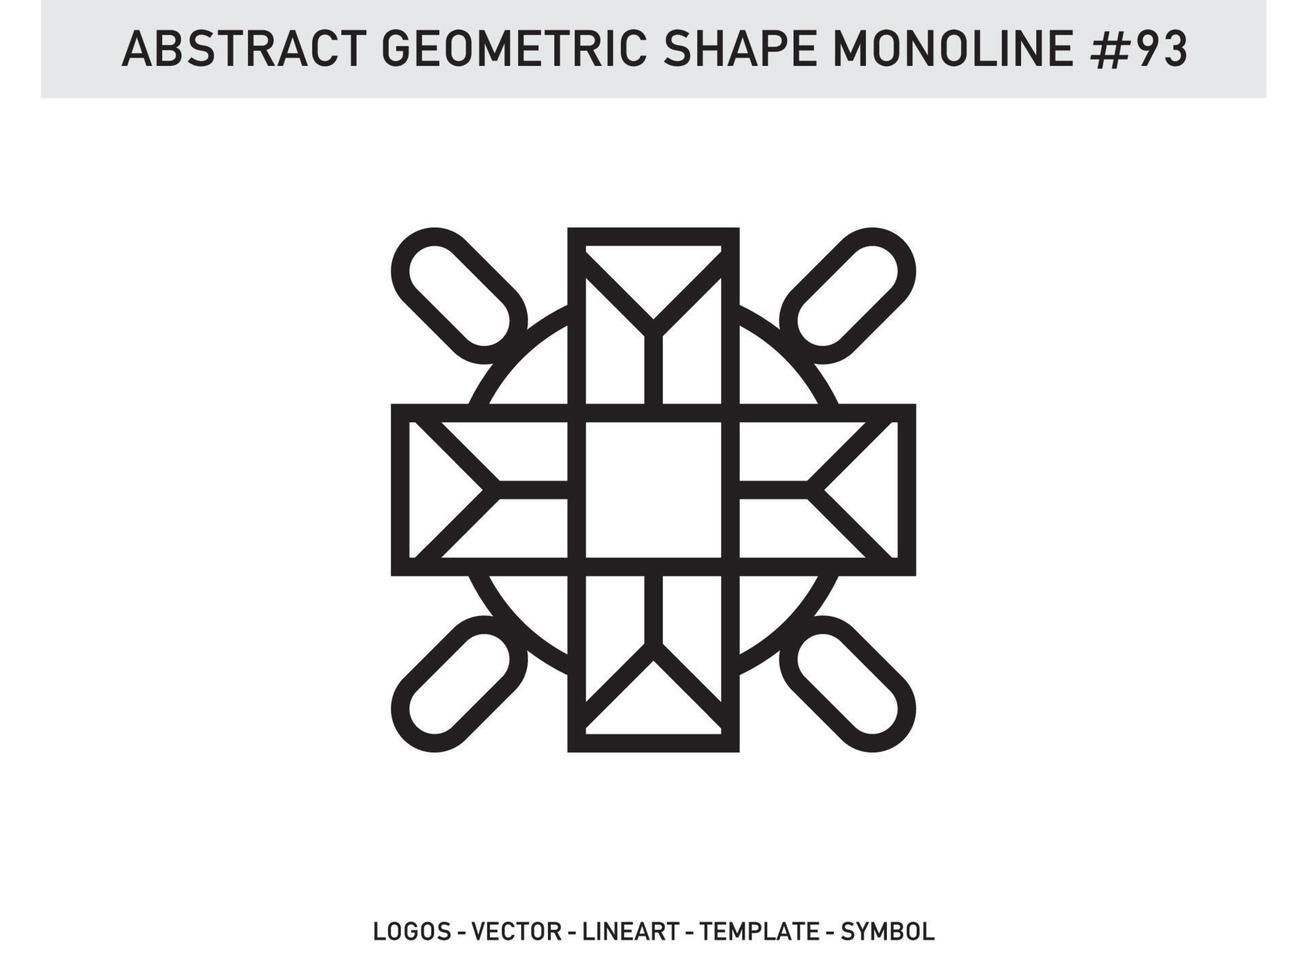 lineart geométrico línea forma monoline resumen vector diseño libre